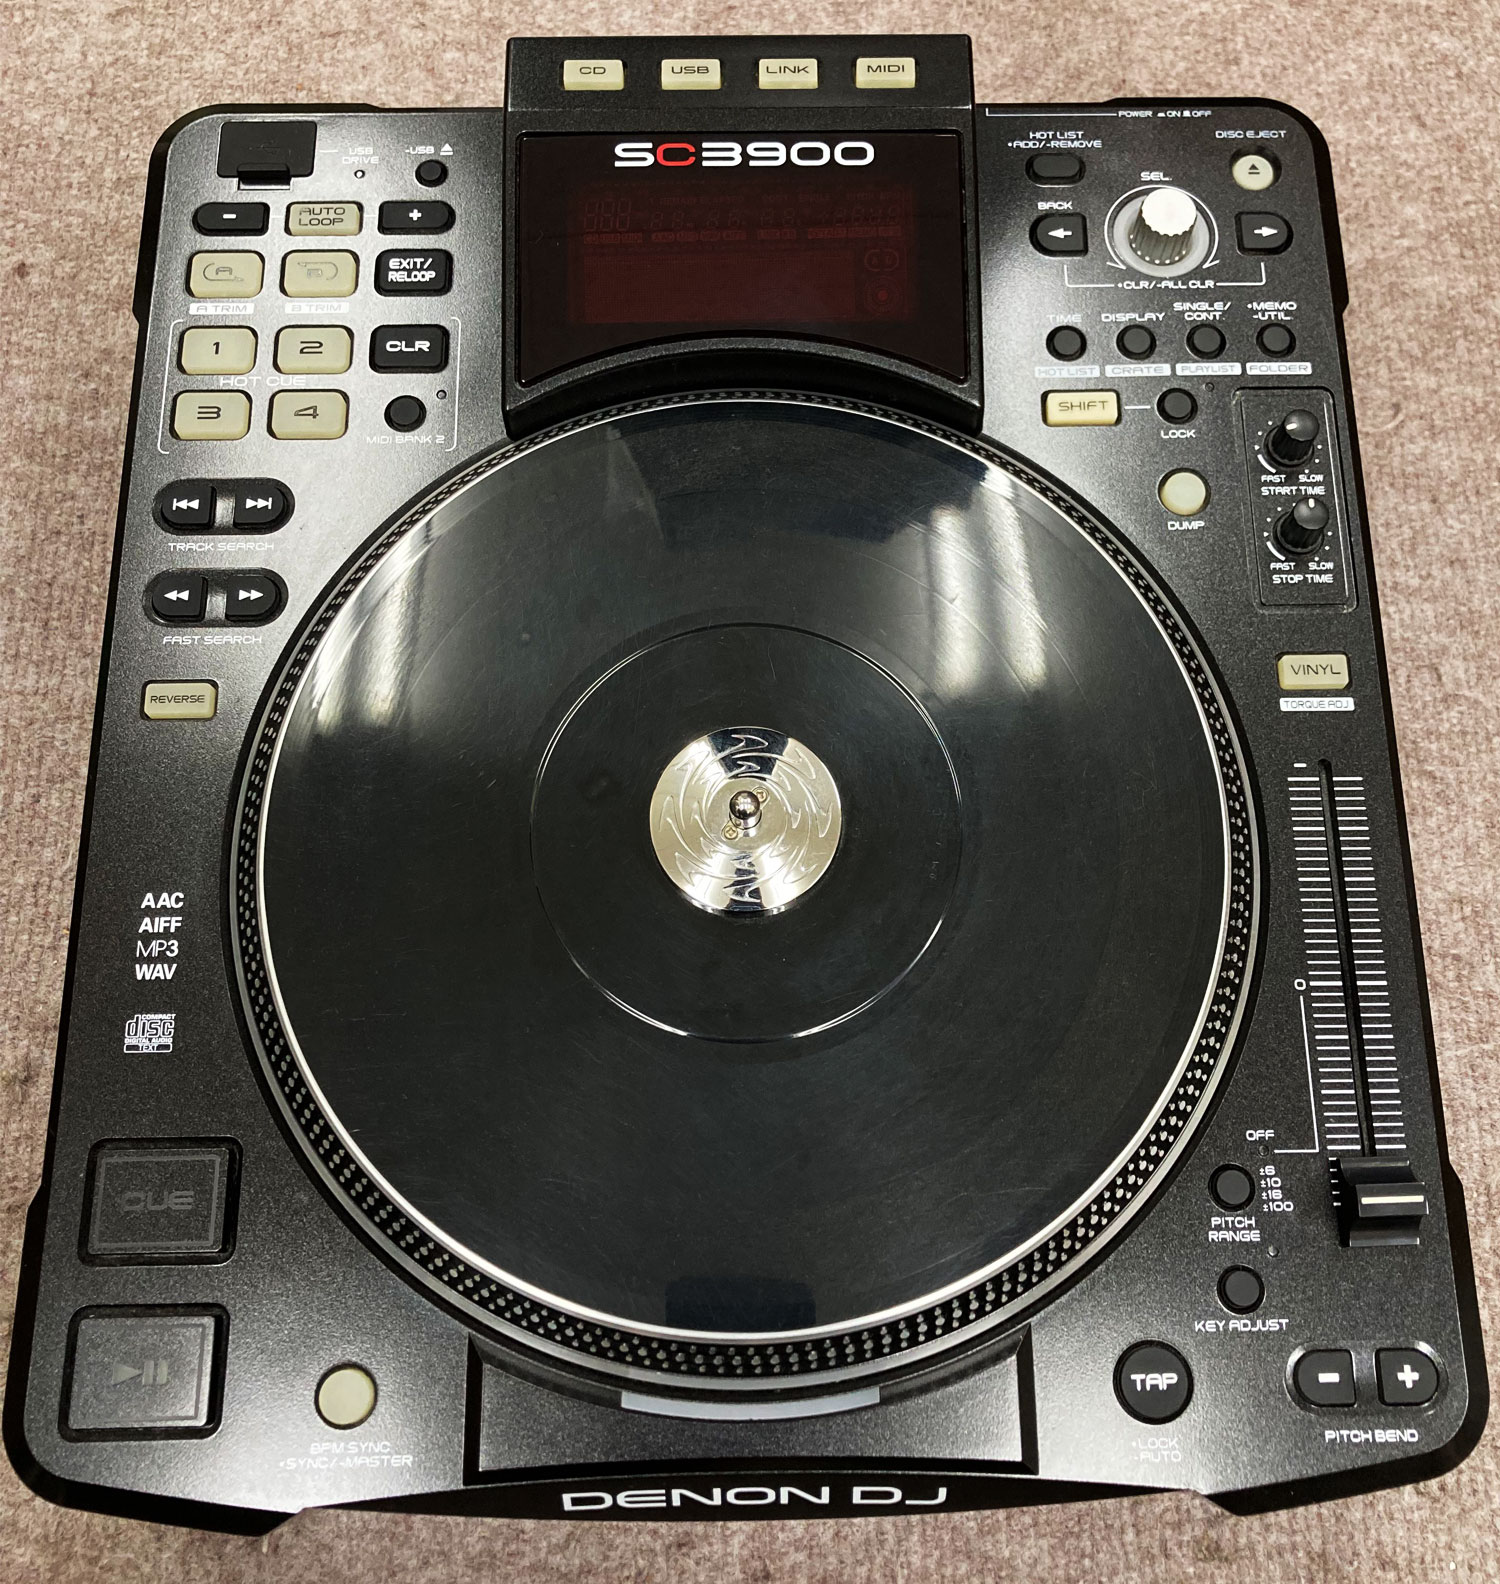 【中古品】DENON DJ/CDJ/SC3900 -DJ機材アナログレコード専門店OTAIRECORD